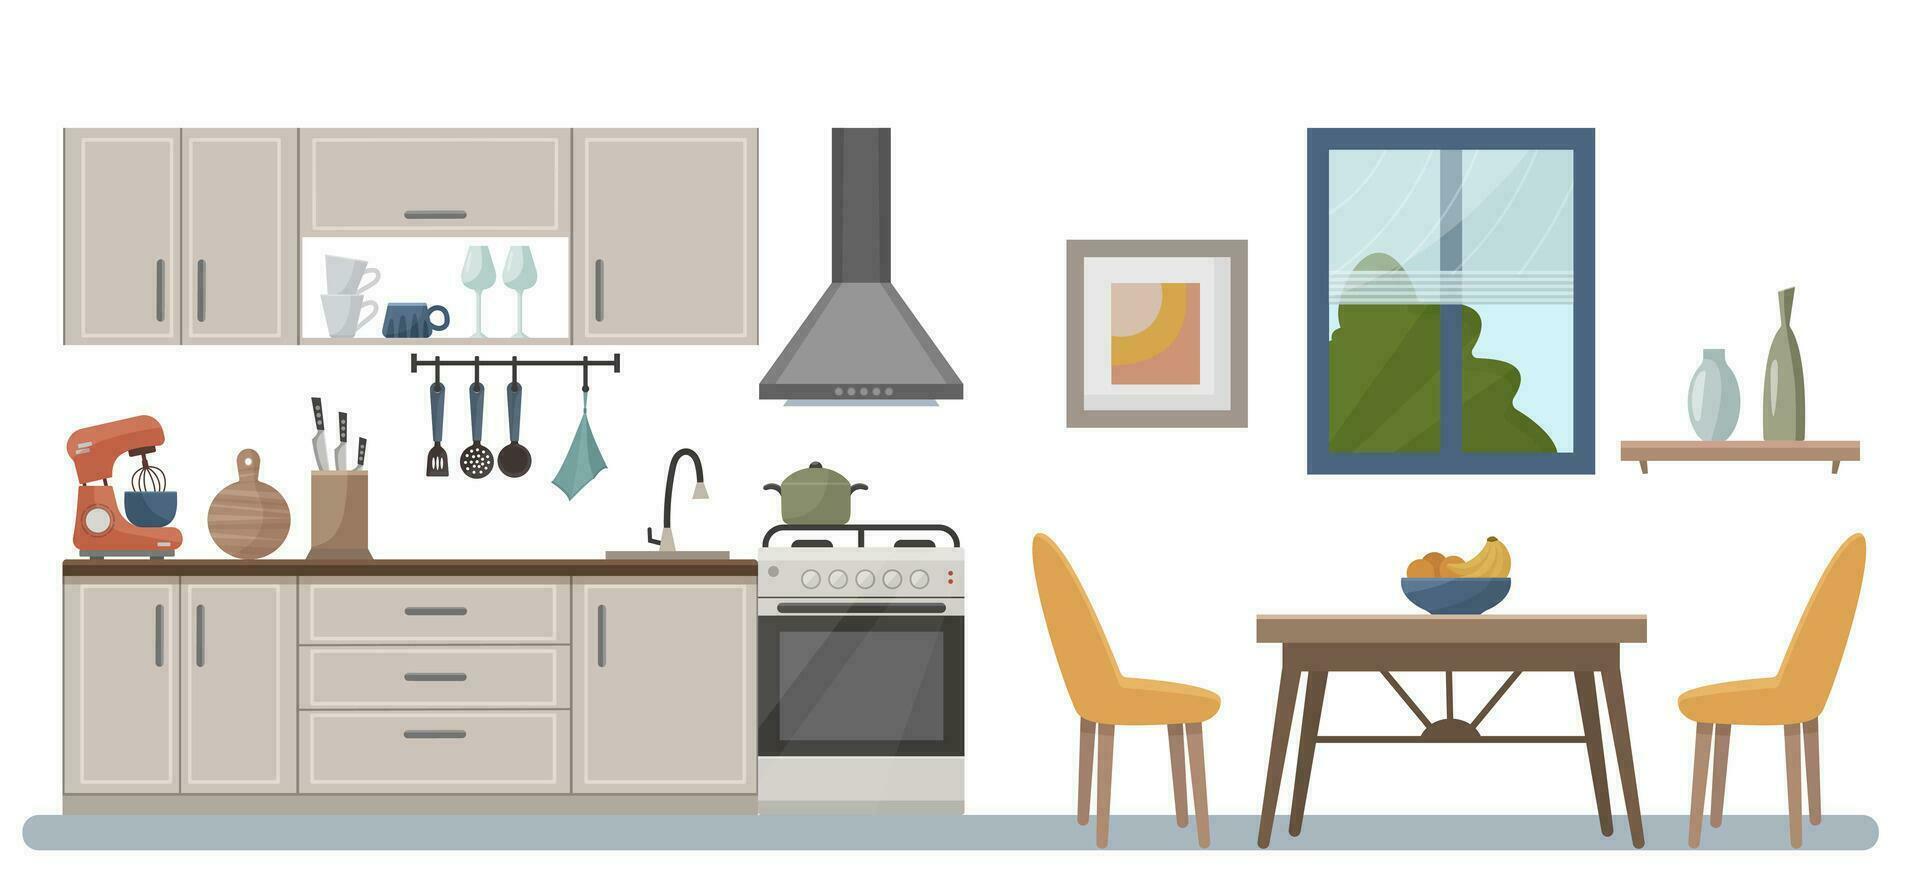 acogedor cocina interior con muebles, cocina, extractor capucha. decoración para el cocina. vector